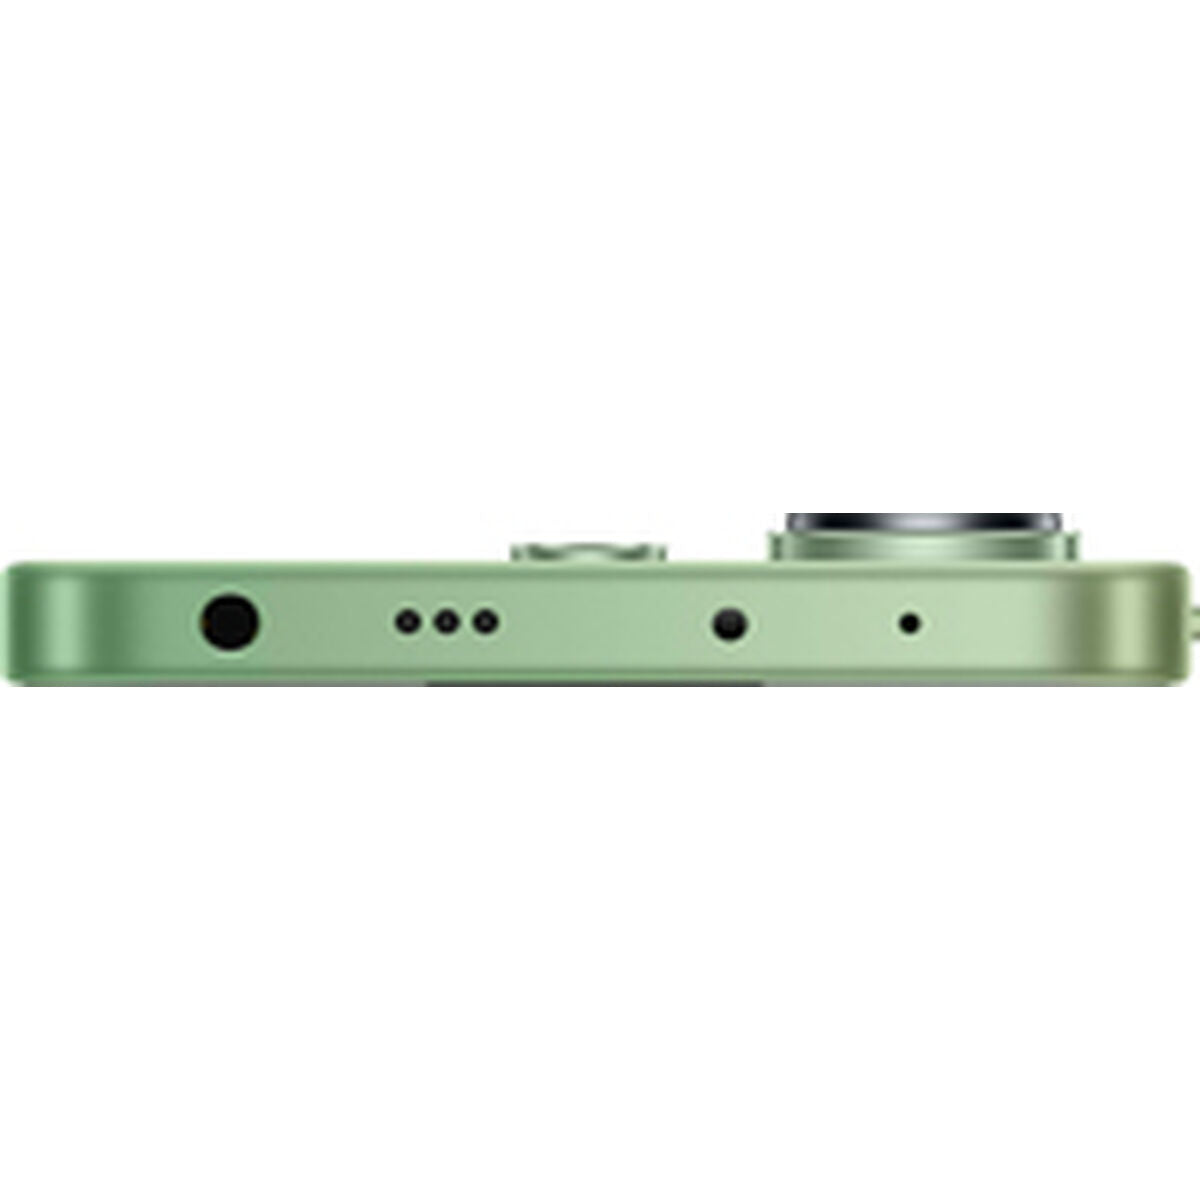 Smartphone Xiaomi REDMI NOTE 13 6,67" Snapdragon 685 6 GB RAM 128 GB grün Minze mint green - CA International  